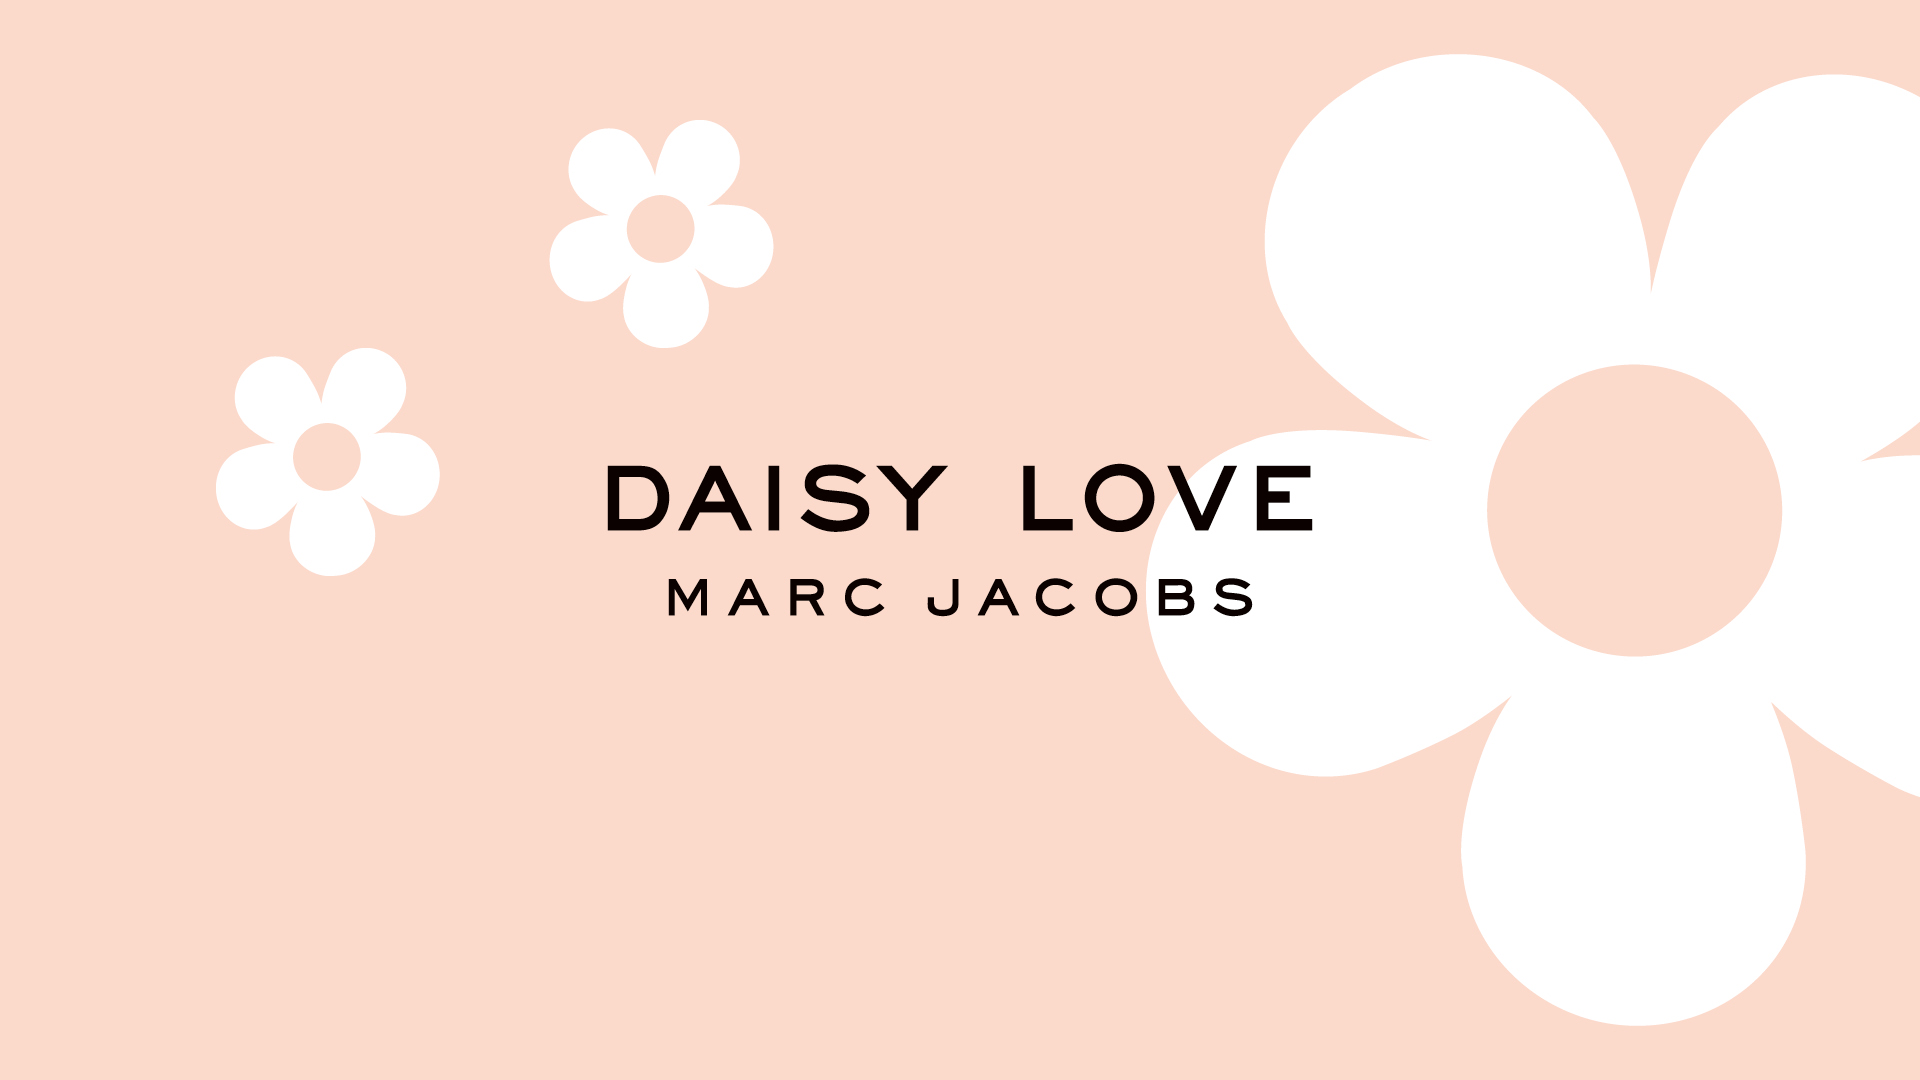 Marc Jacobs - Daisy Love